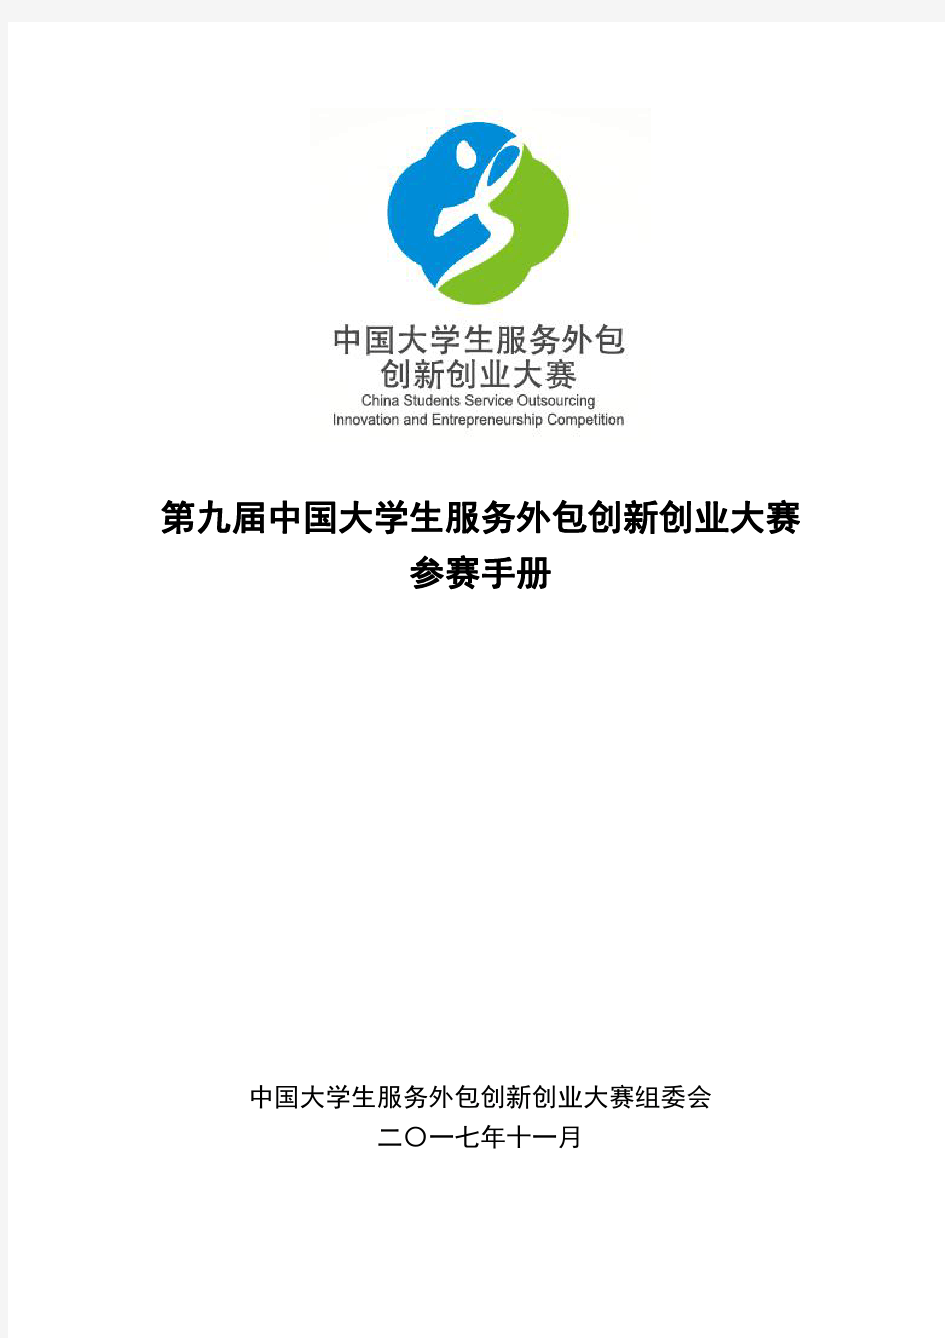 第九届中国大学生服务外包创新创业大赛参赛手册